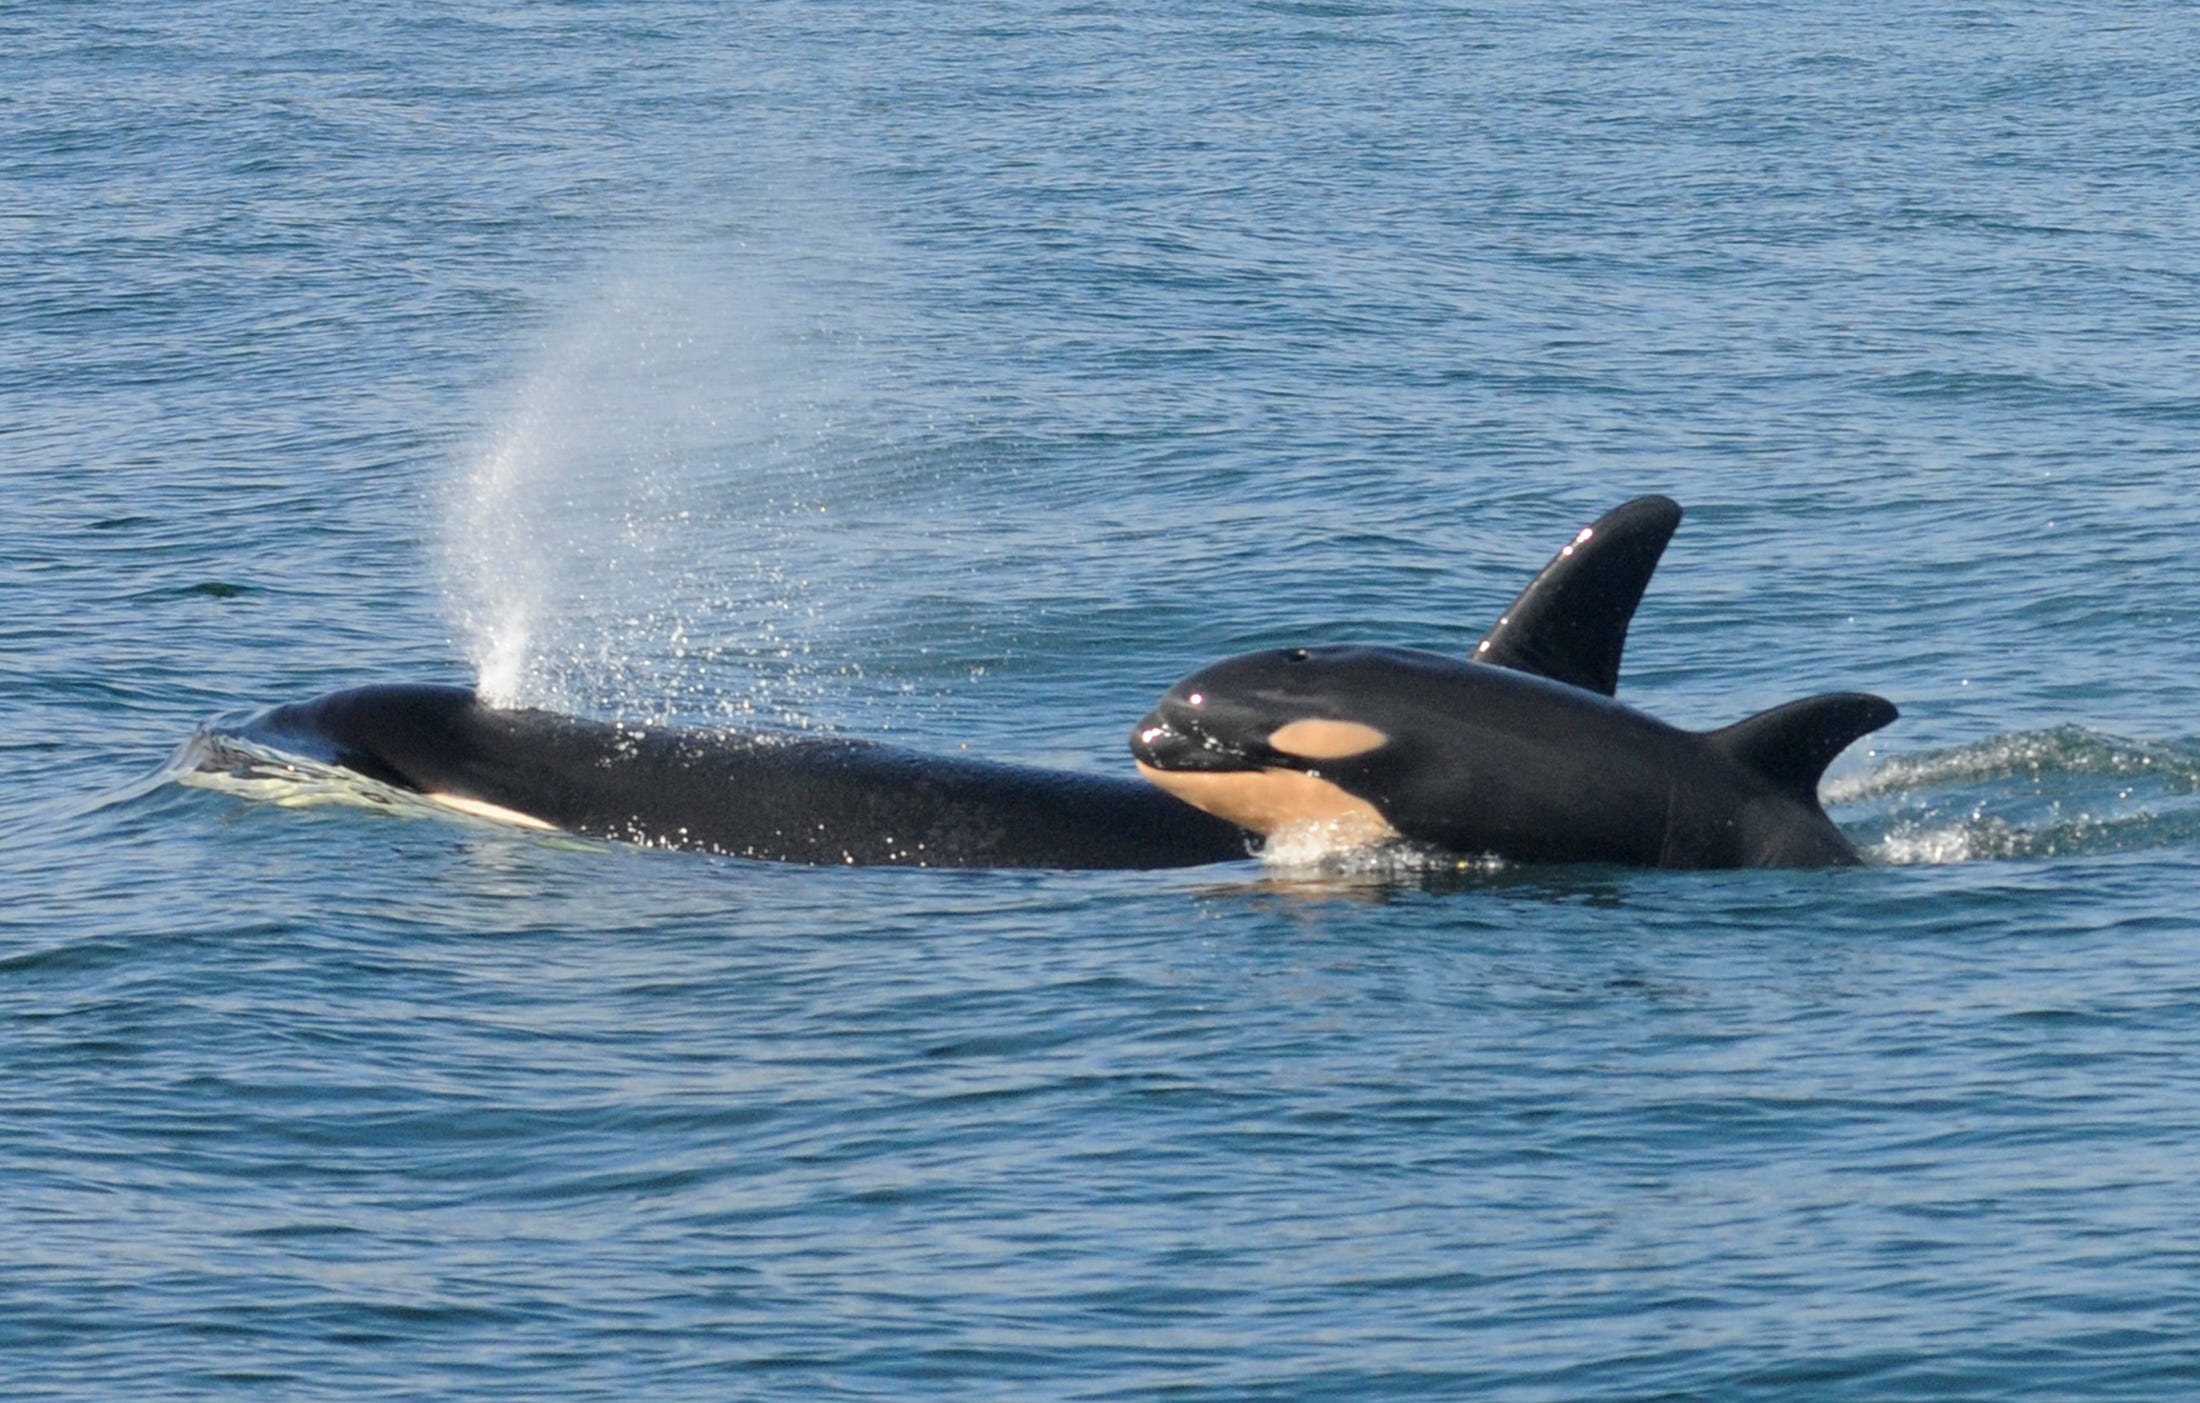 Orca durchbricht Wasser und spritzt Wasser aus, während Baby-Orca nebenher springt